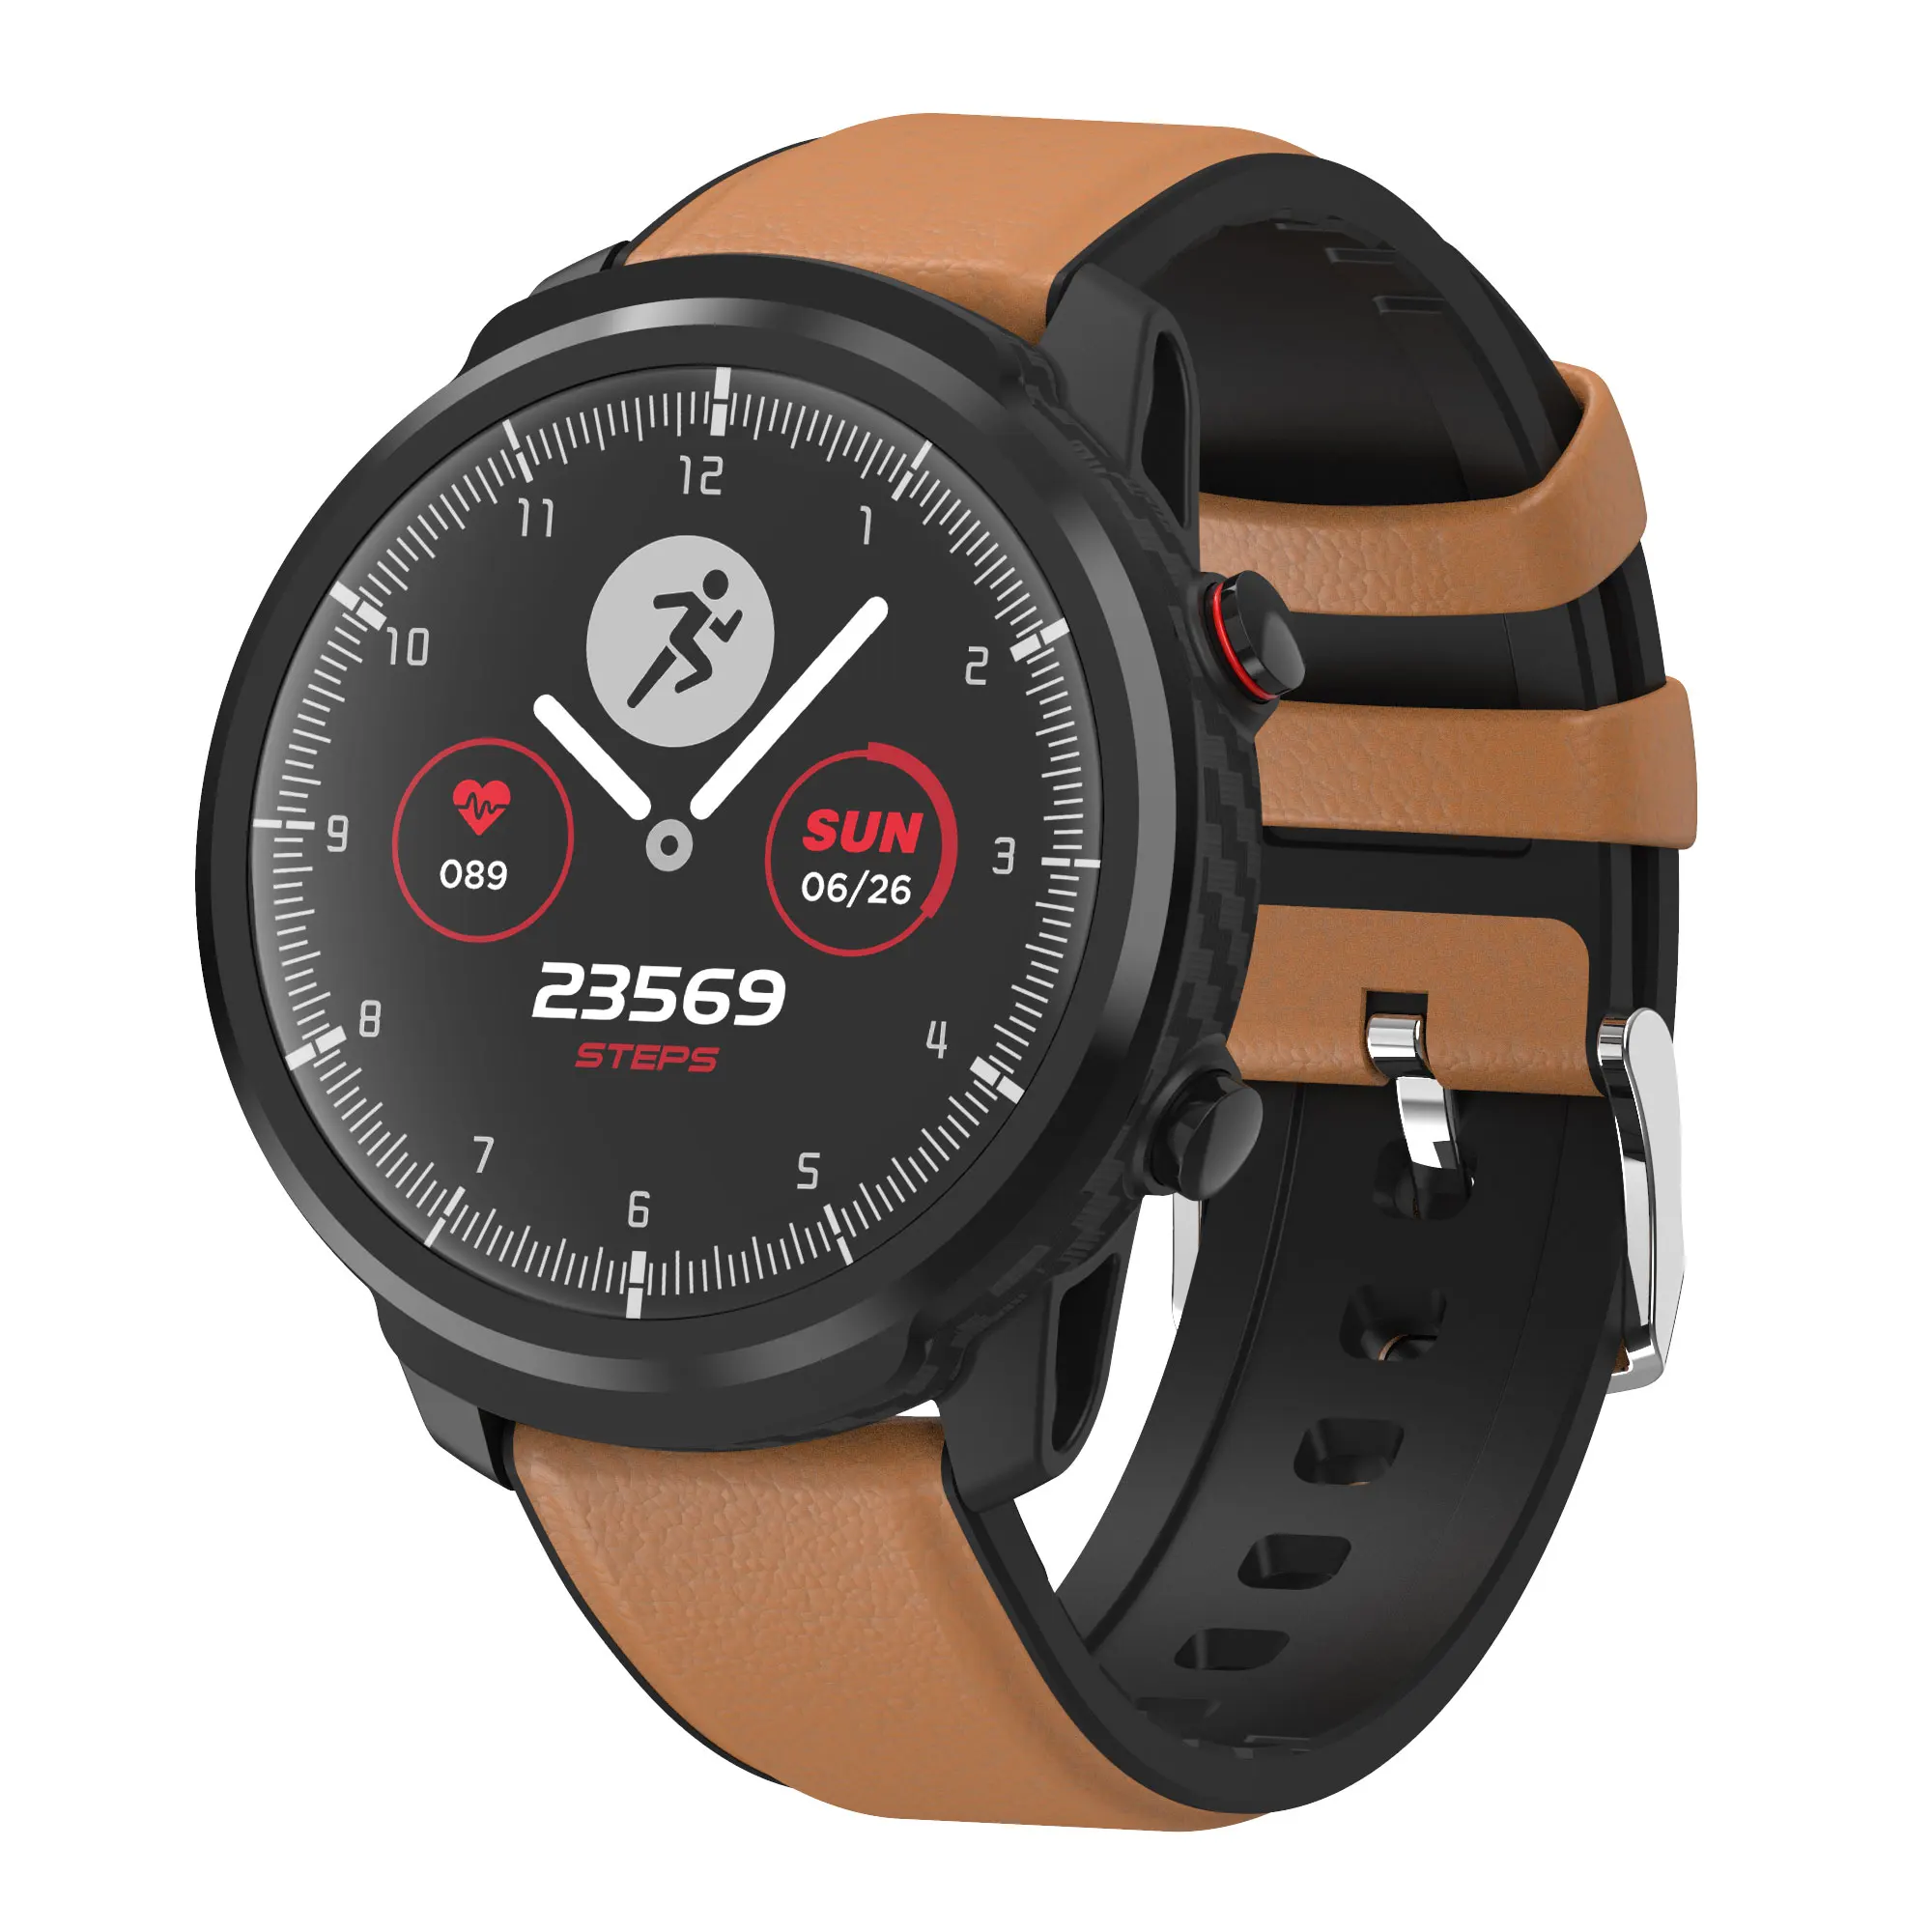 L5 s10 L3 Смарт-часы для мужчин IP68 Водонепроницаемый Полный сенсорный экран 60 дней в режиме ожидания умные часы пульсометр кровяное давление трекер - Цвет: leather starp